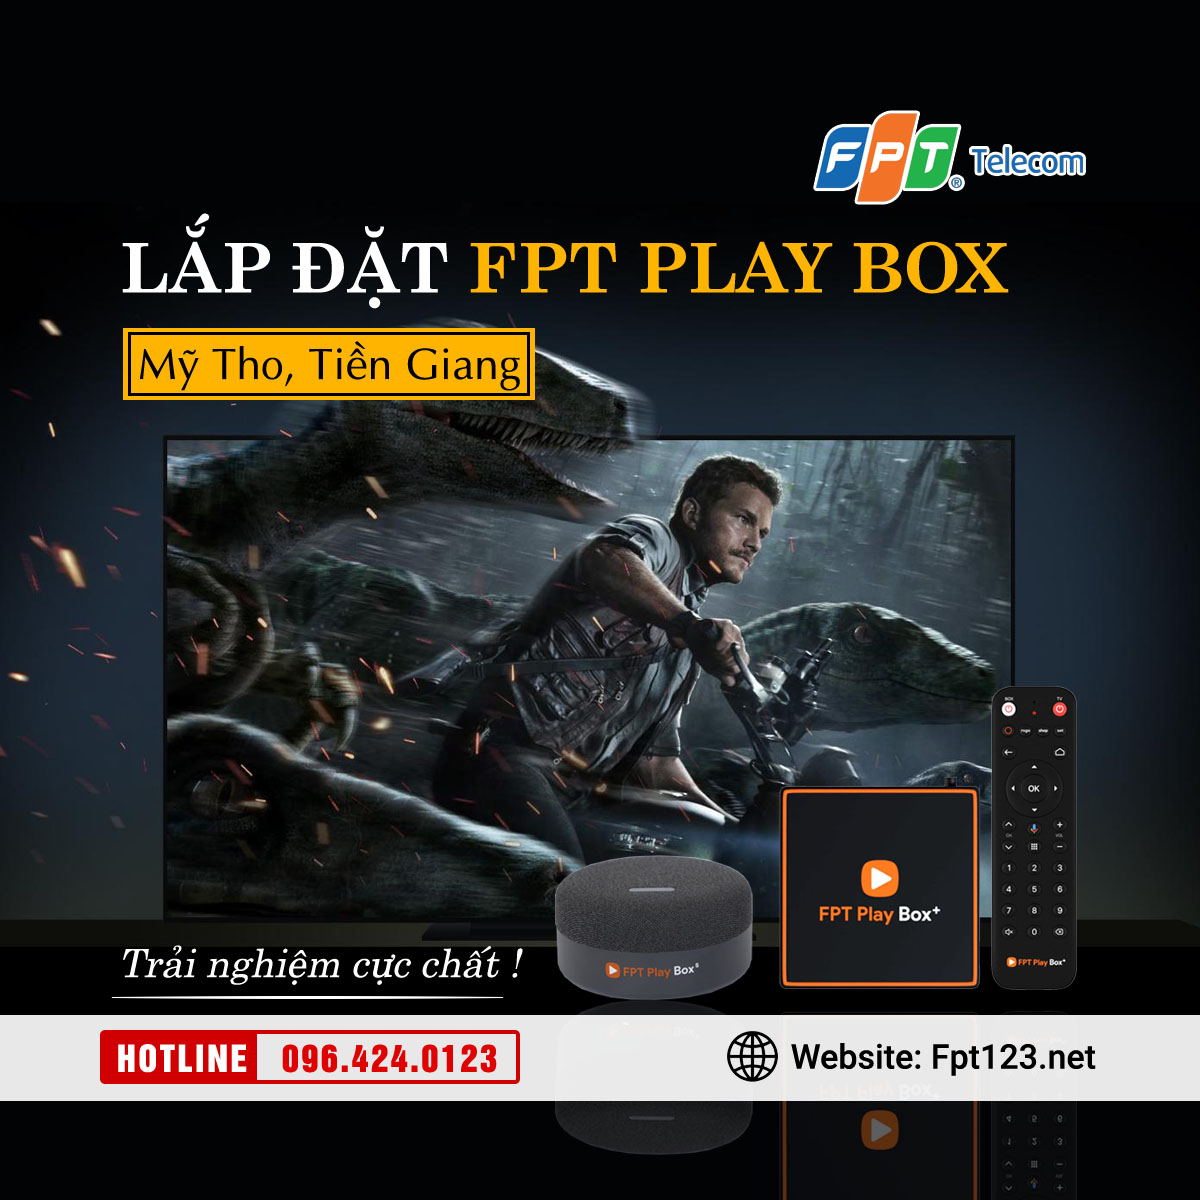 Lắp đặt FPT Play Box chính hãng tại Mỹ Tho, Tiền Giang